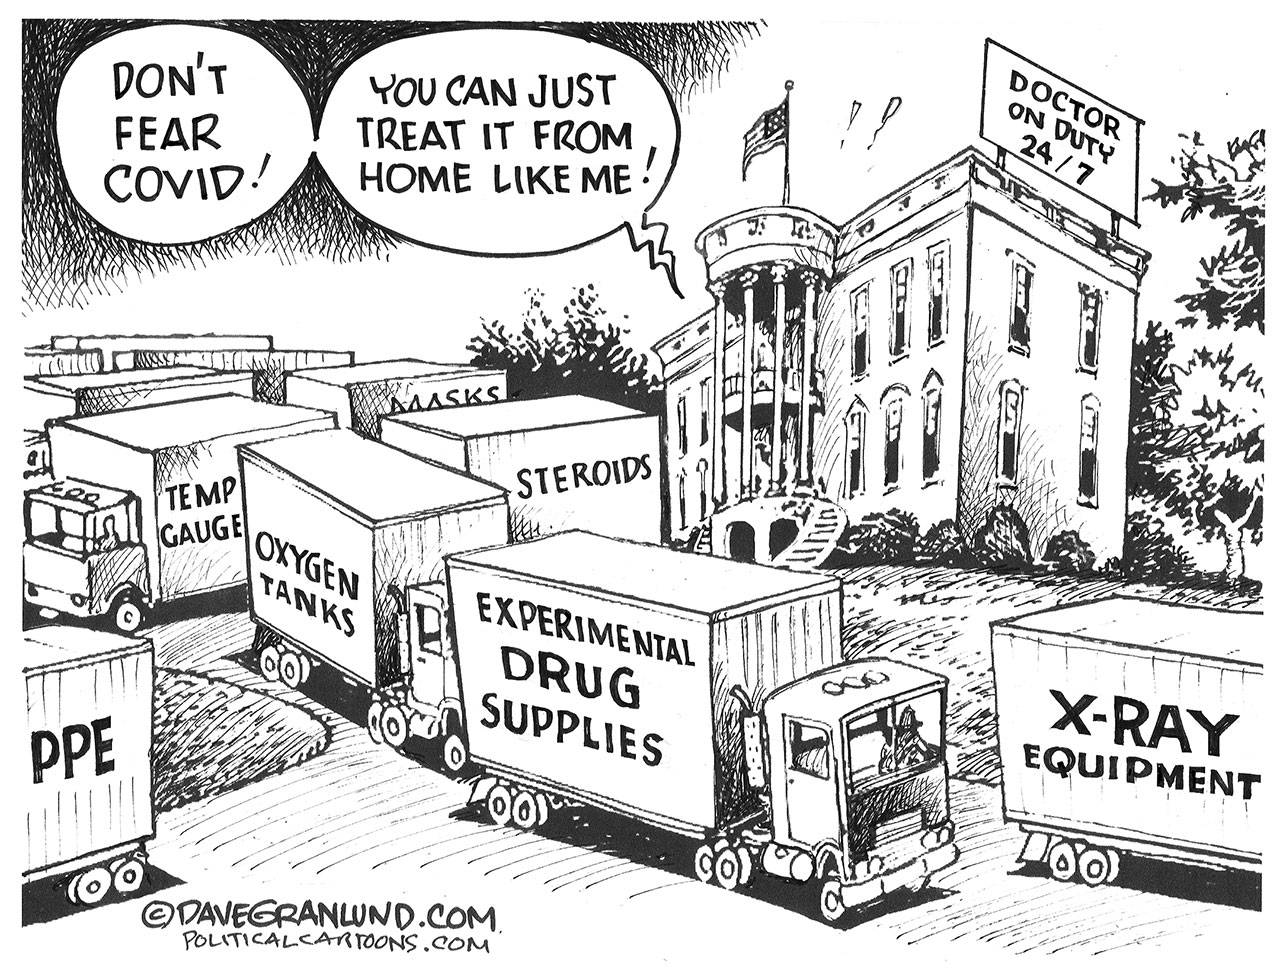 Dave Granlund, PoliticalCartoons.com